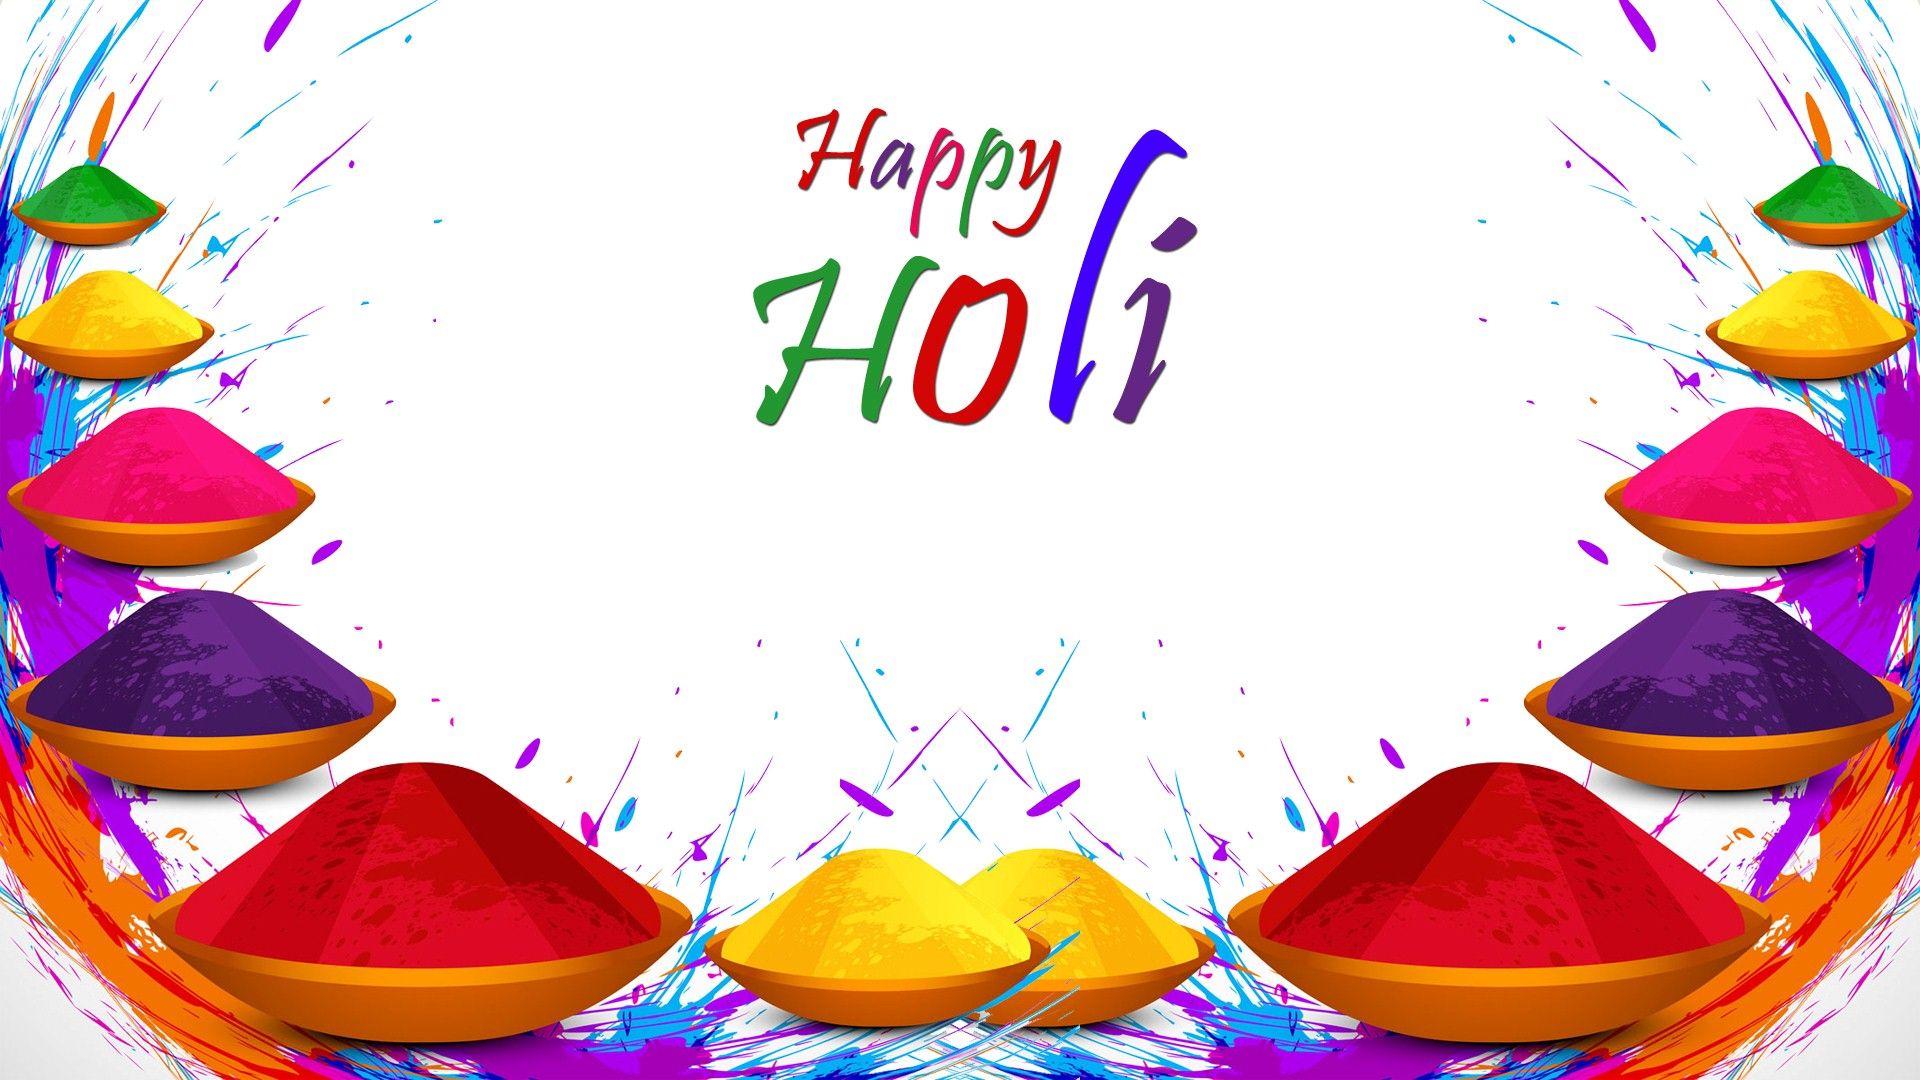 Download 1920x1080 Happy Holi Desktop HD Pics wallpaper